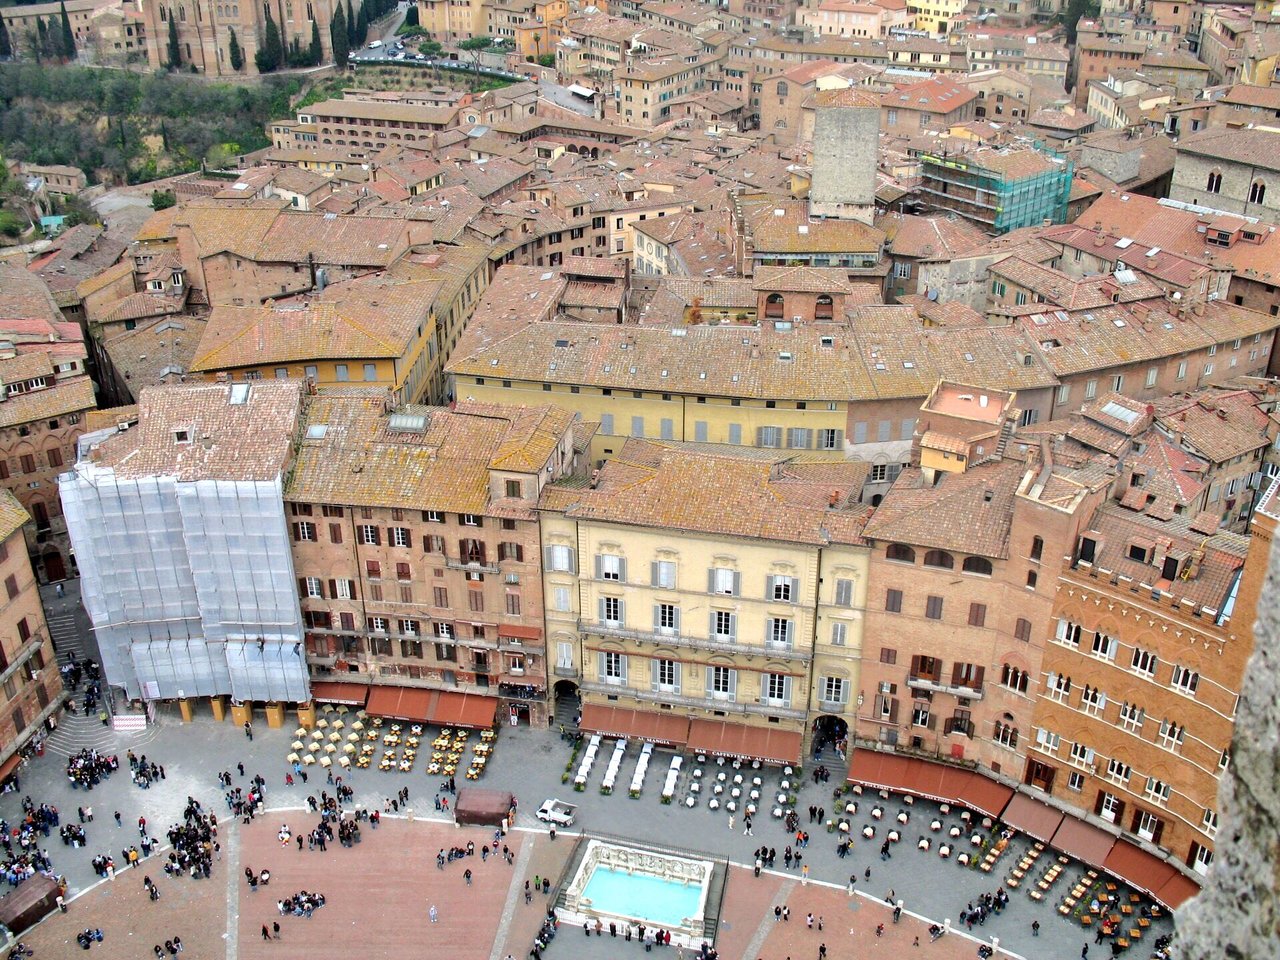 Meravigliosa #Siena ❤️#toscana #viaggi @VisitTuscany https://t.co/tHAIj5DSgo